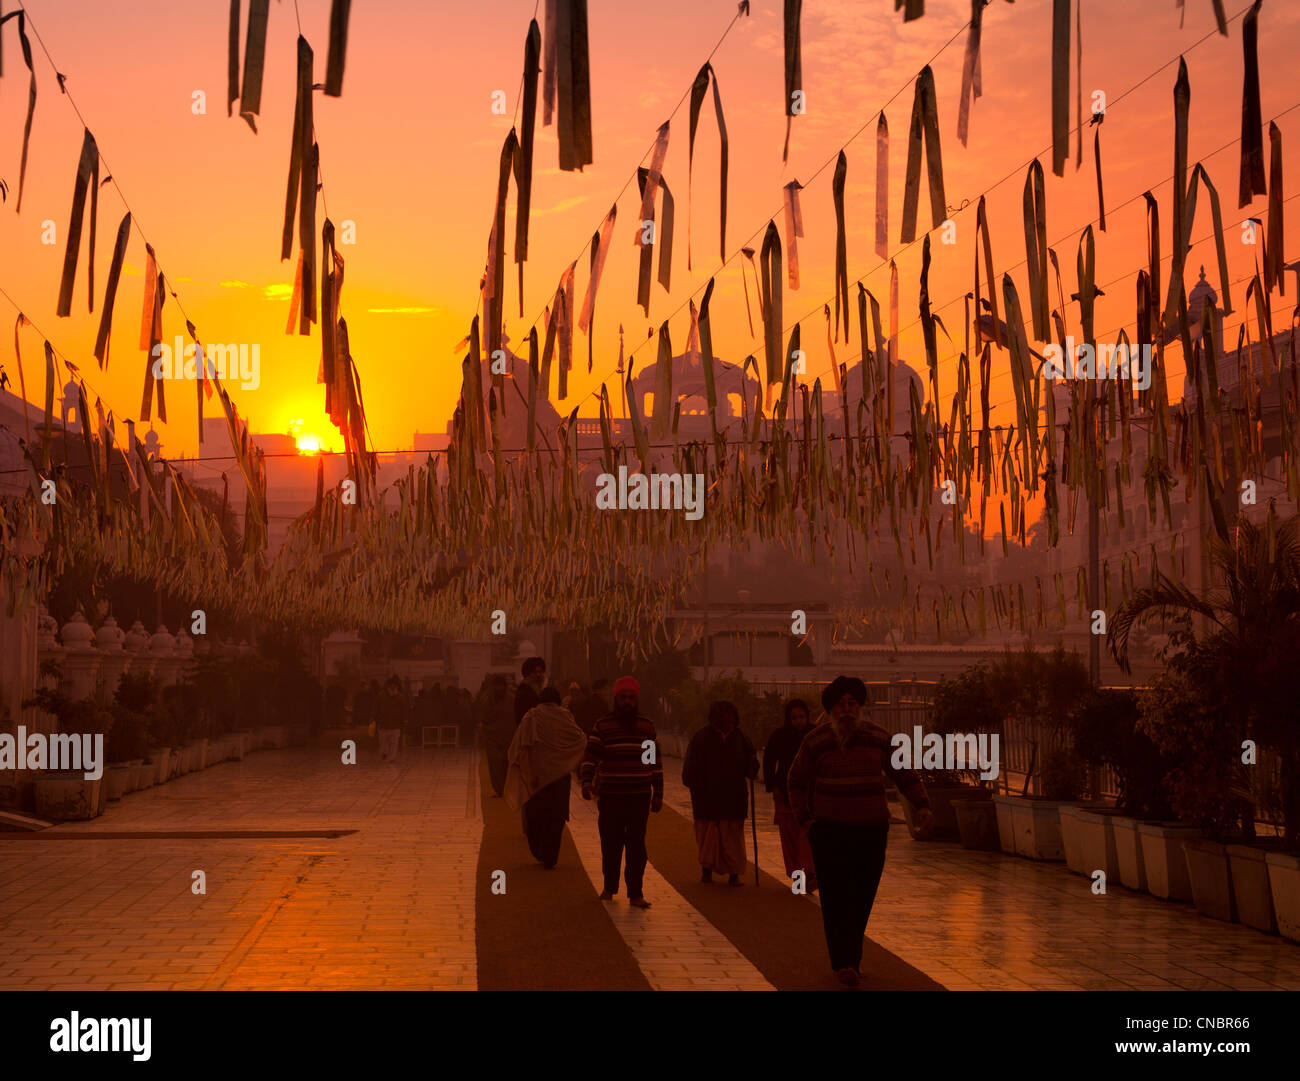 India, Punjab, Amritsar, Golden Temple wind chimes at sunrise Stock Photo